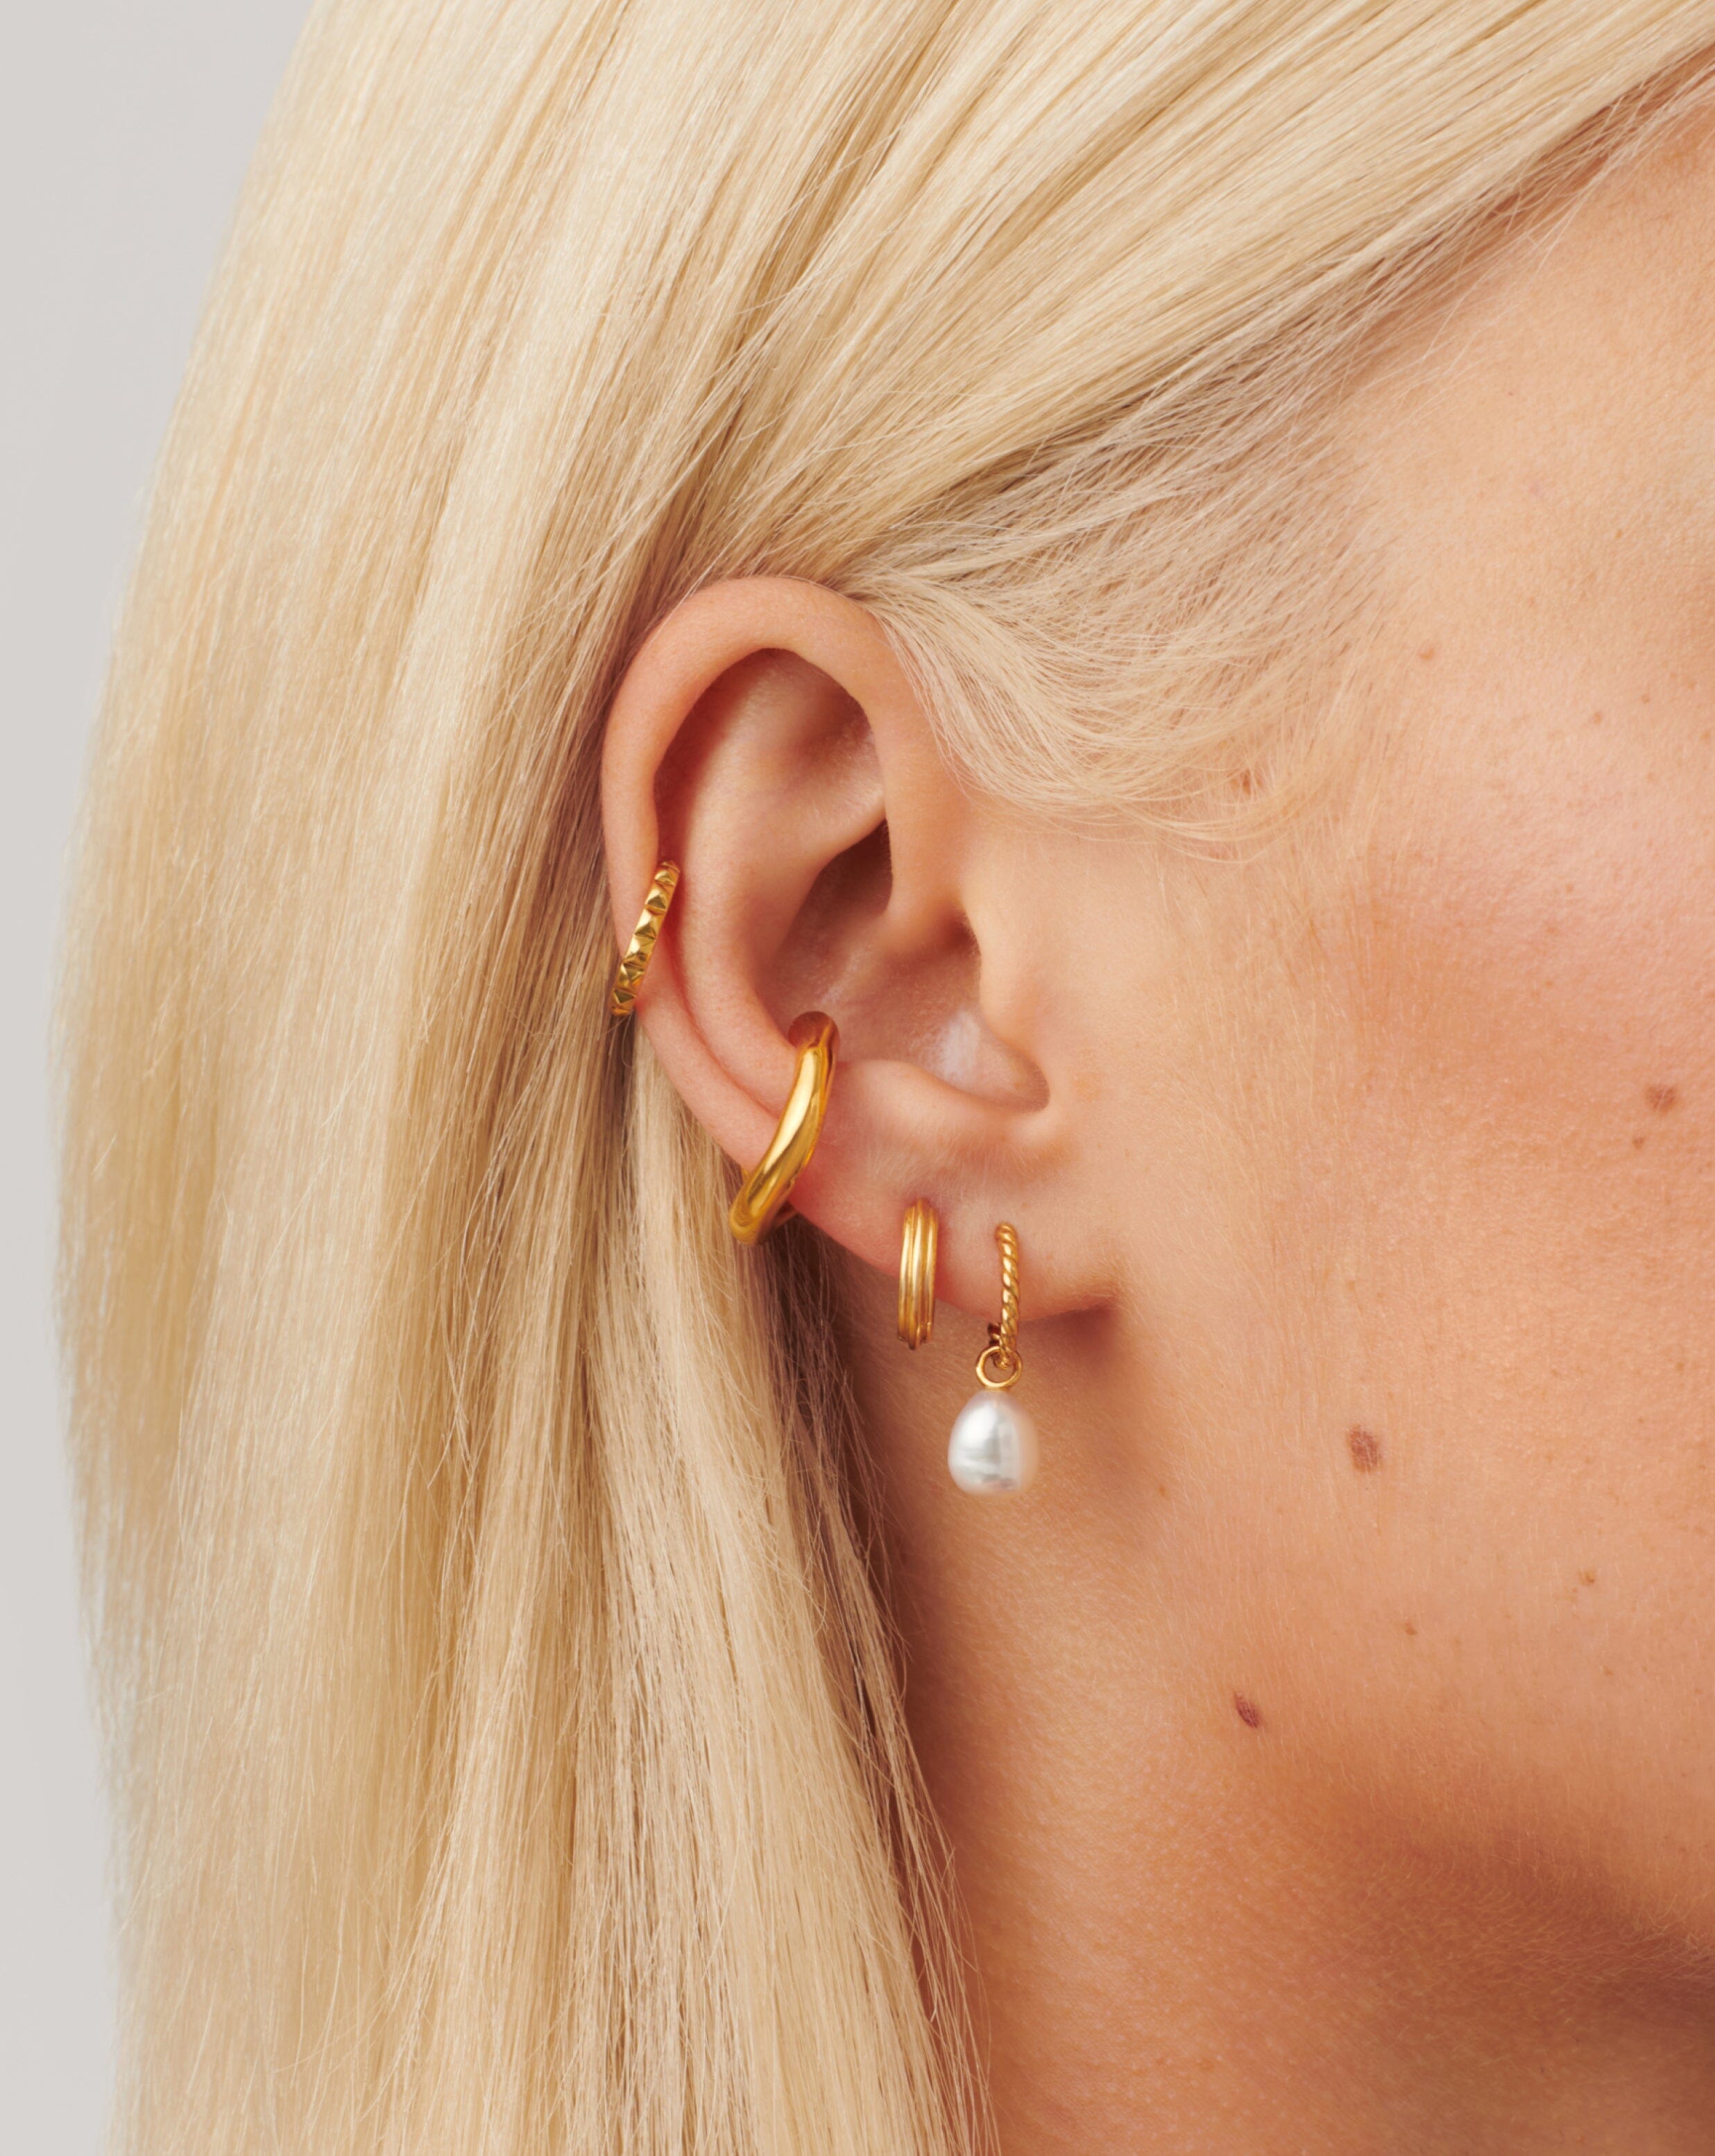 AUMNI CRAFTS Hoop Earrings For Jewellery Making - Hoop Earrings